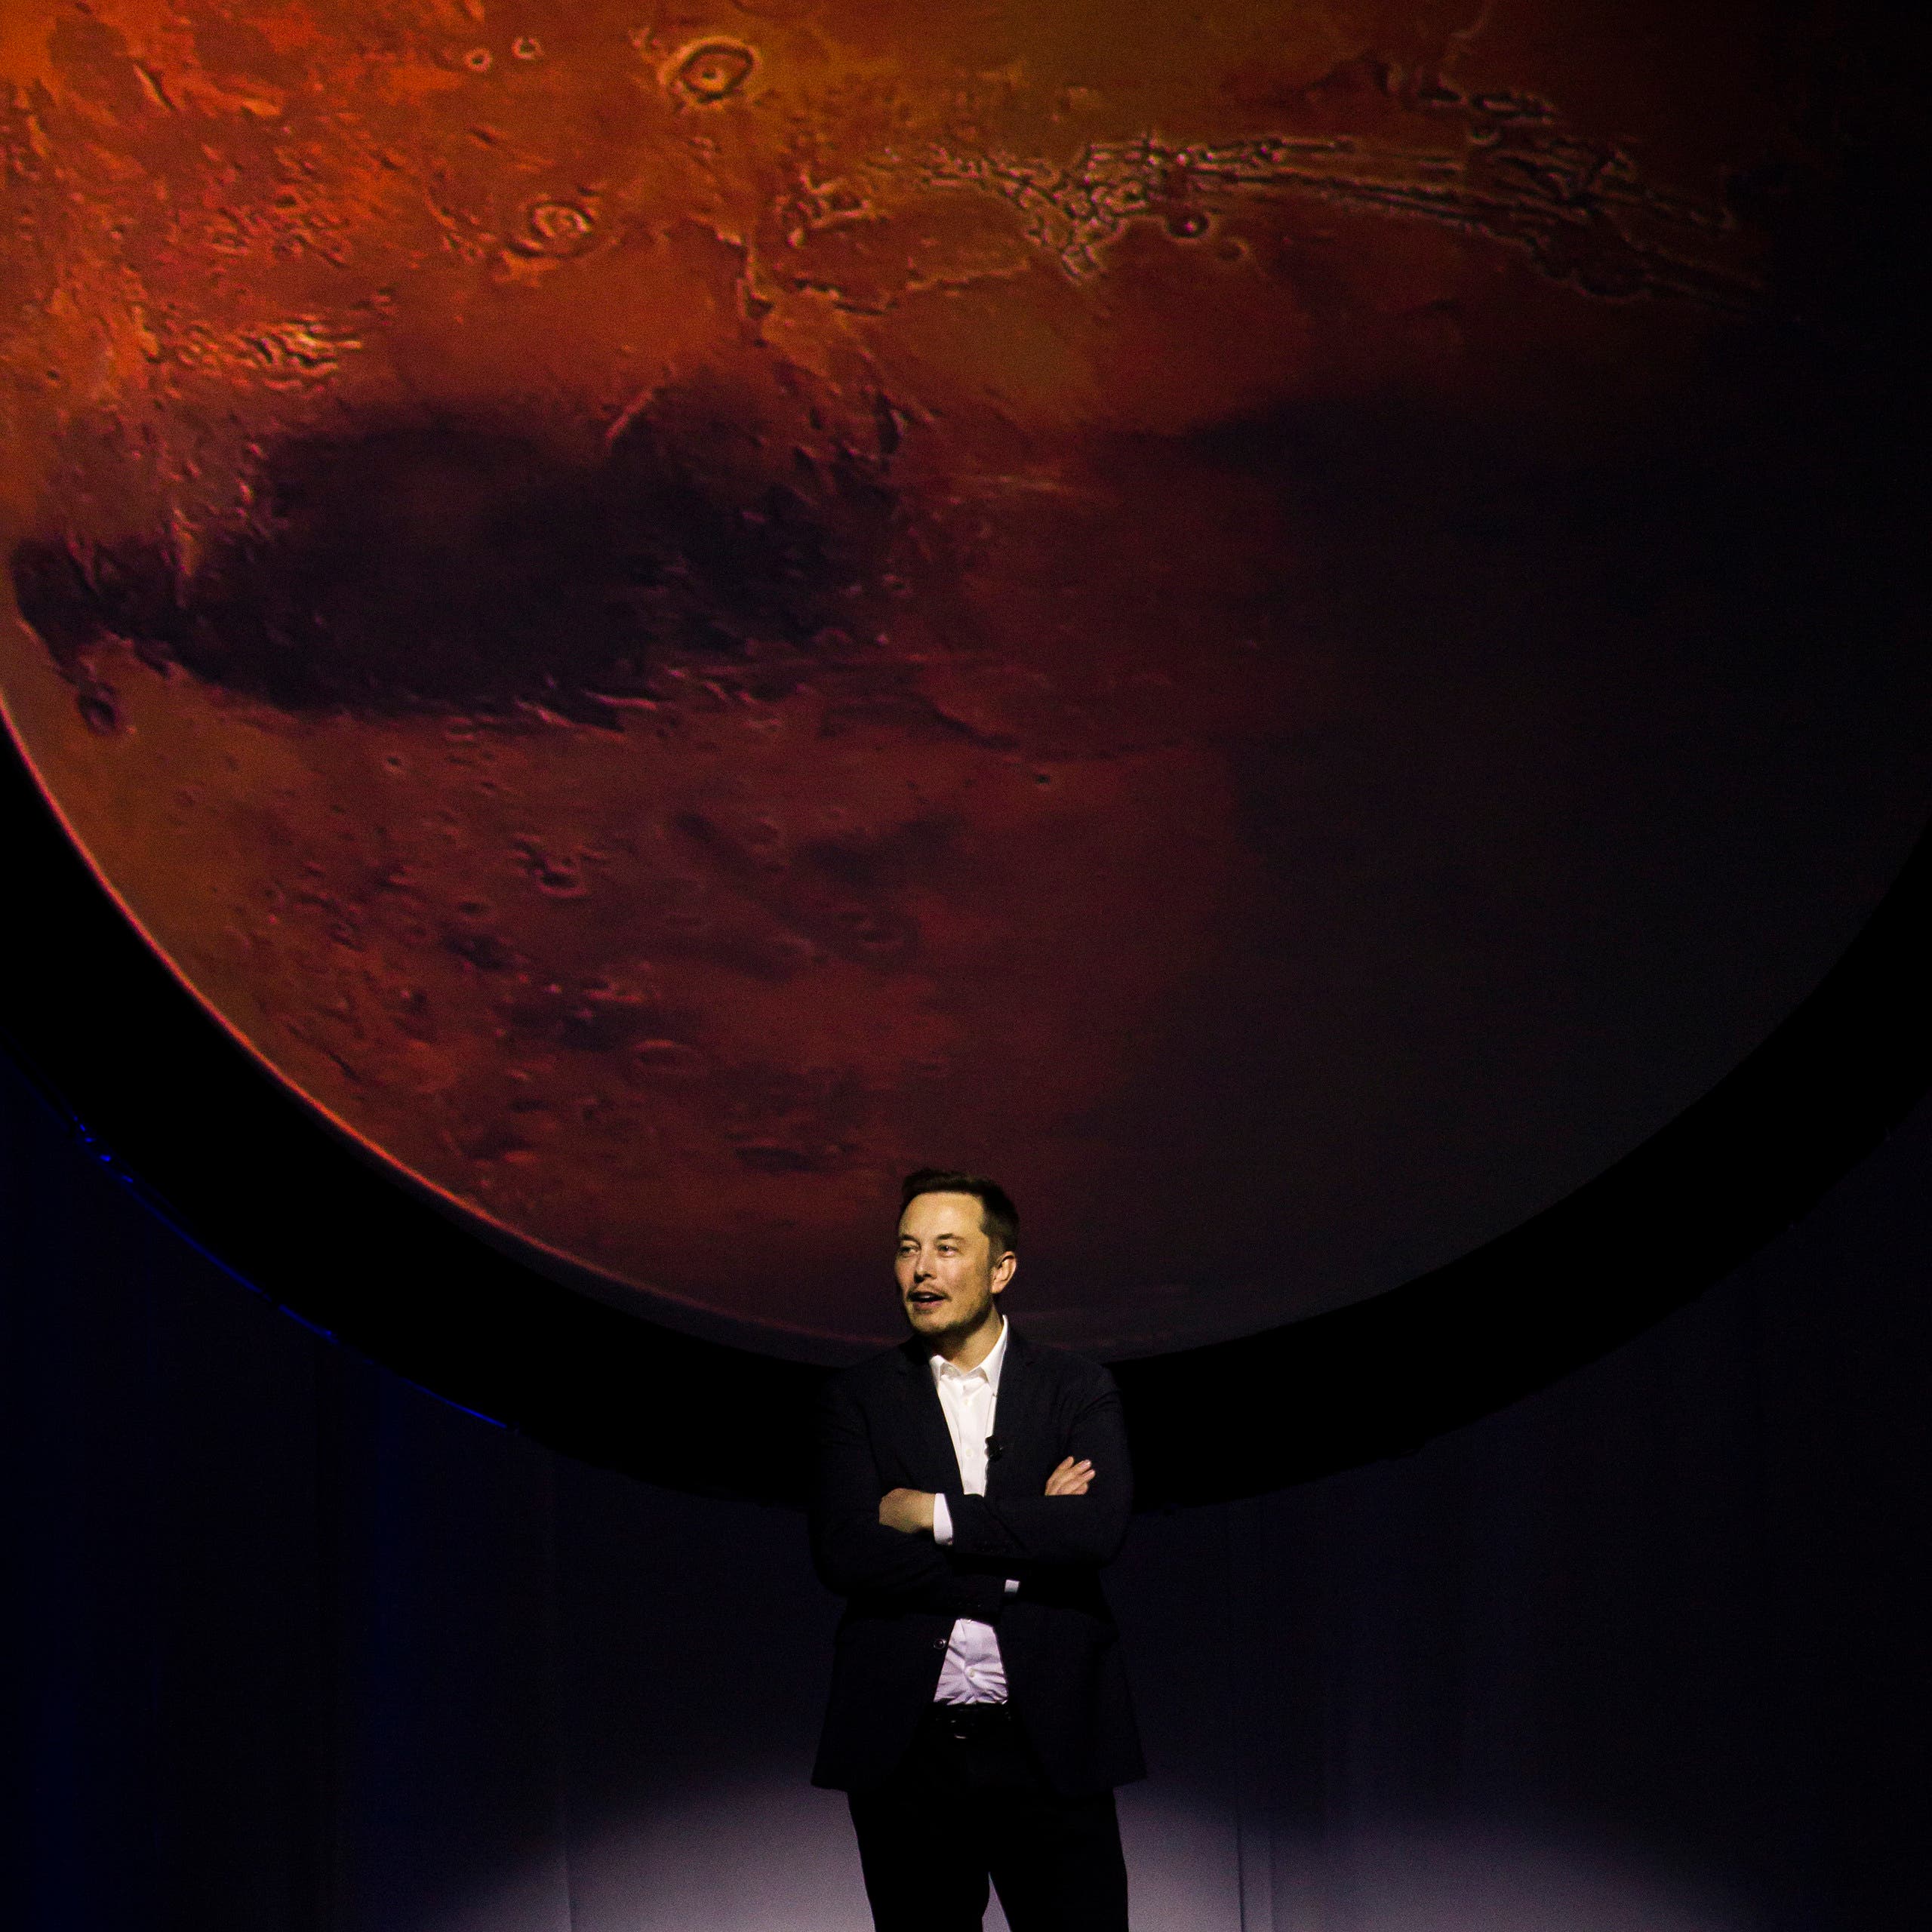 إيلون ماسك يكشف لأول مرة كيف ستكون الحياة على المريخ!